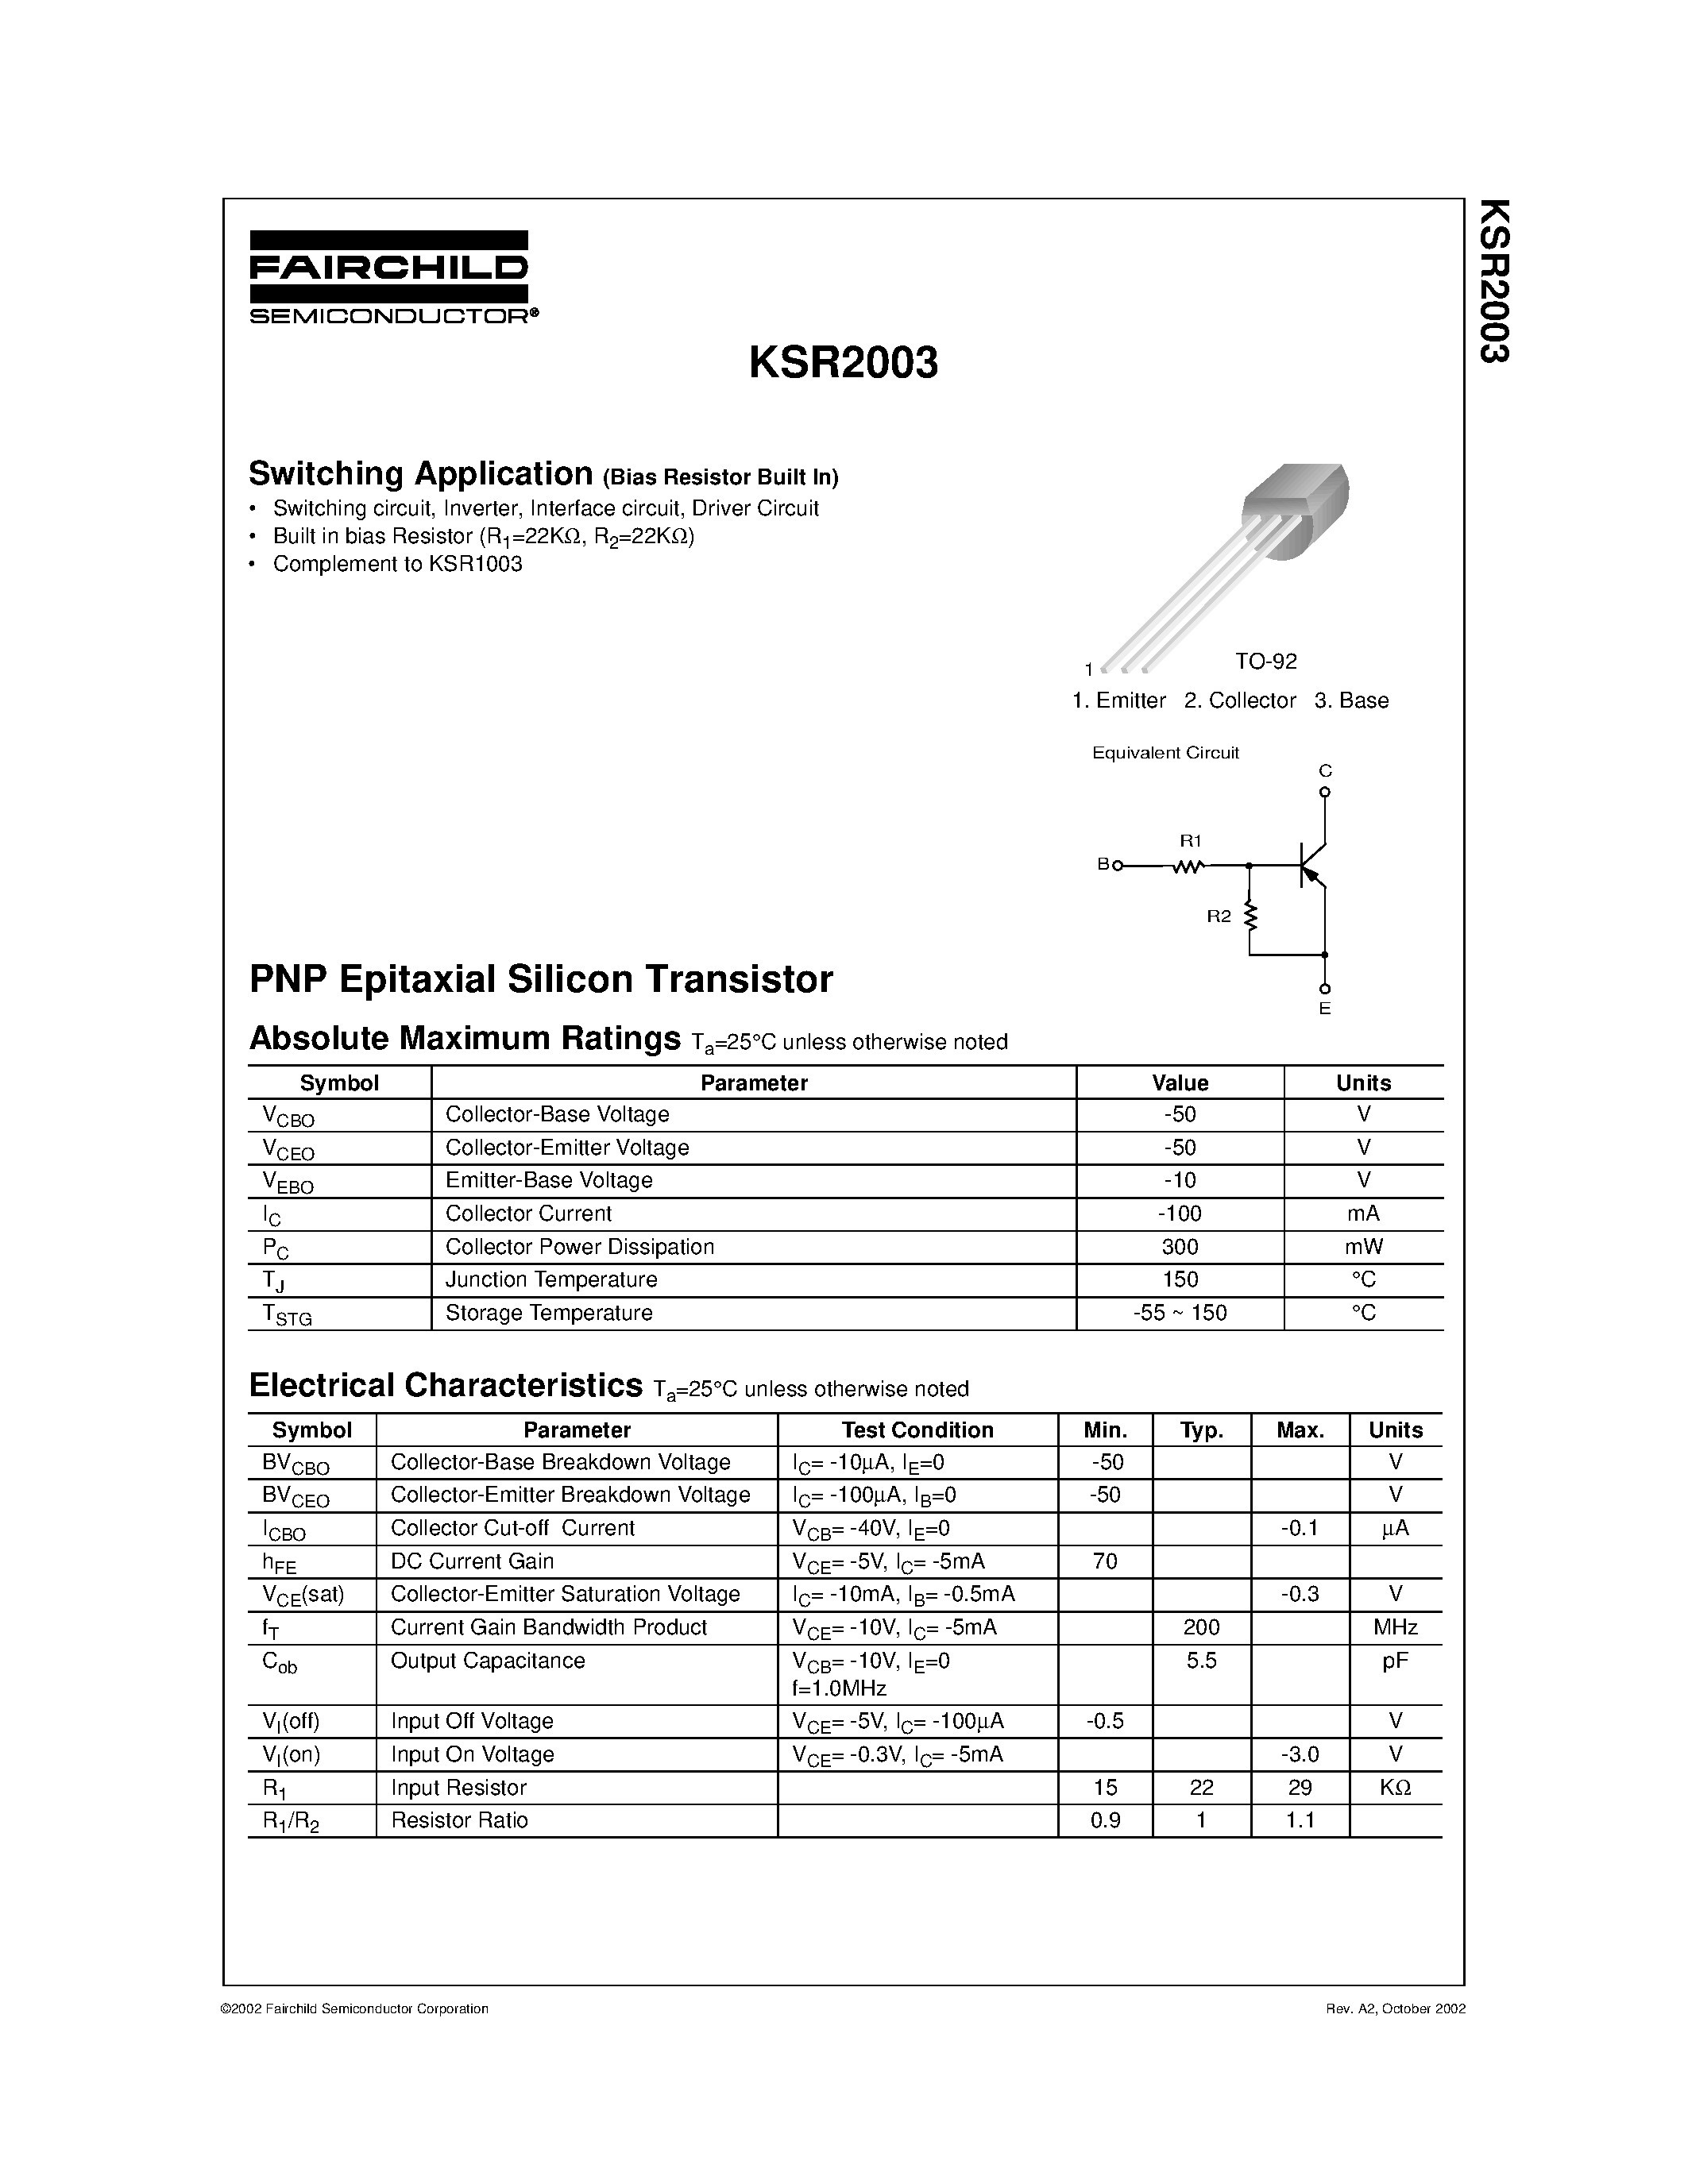 Даташит KSR2003 - Switching Application страница 1